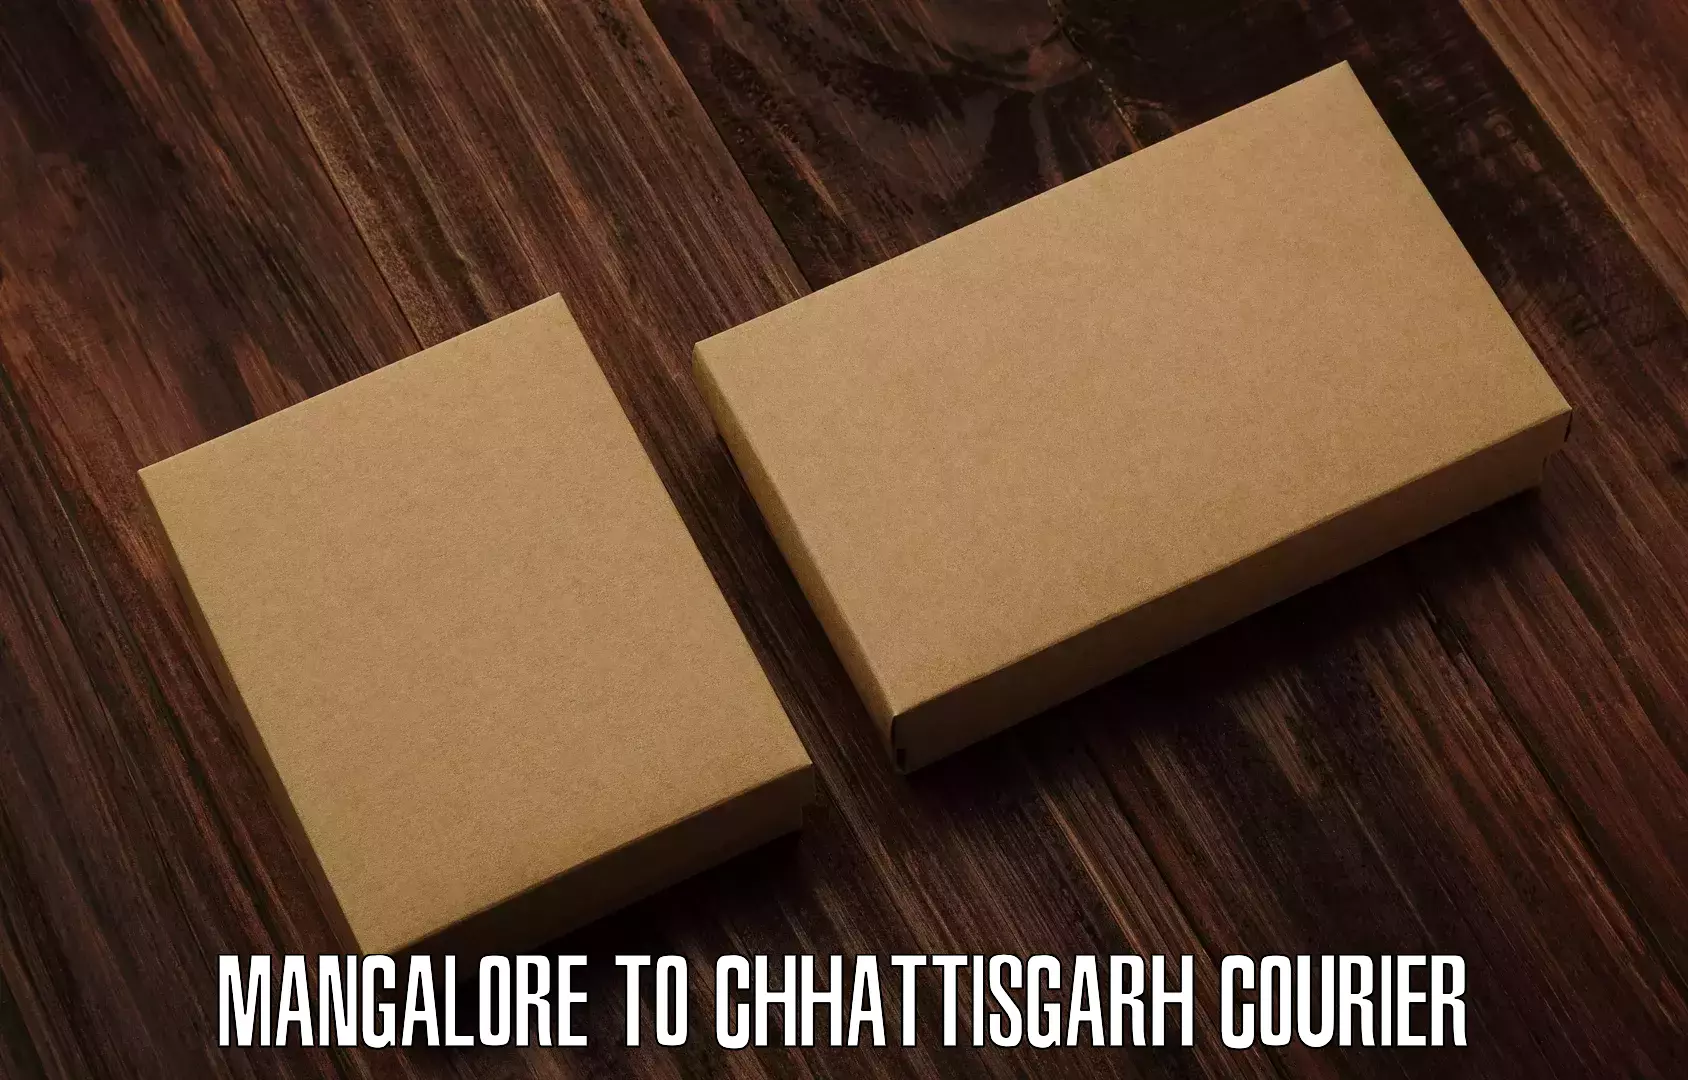 Cash on delivery service Mangalore to Chhattisgarh